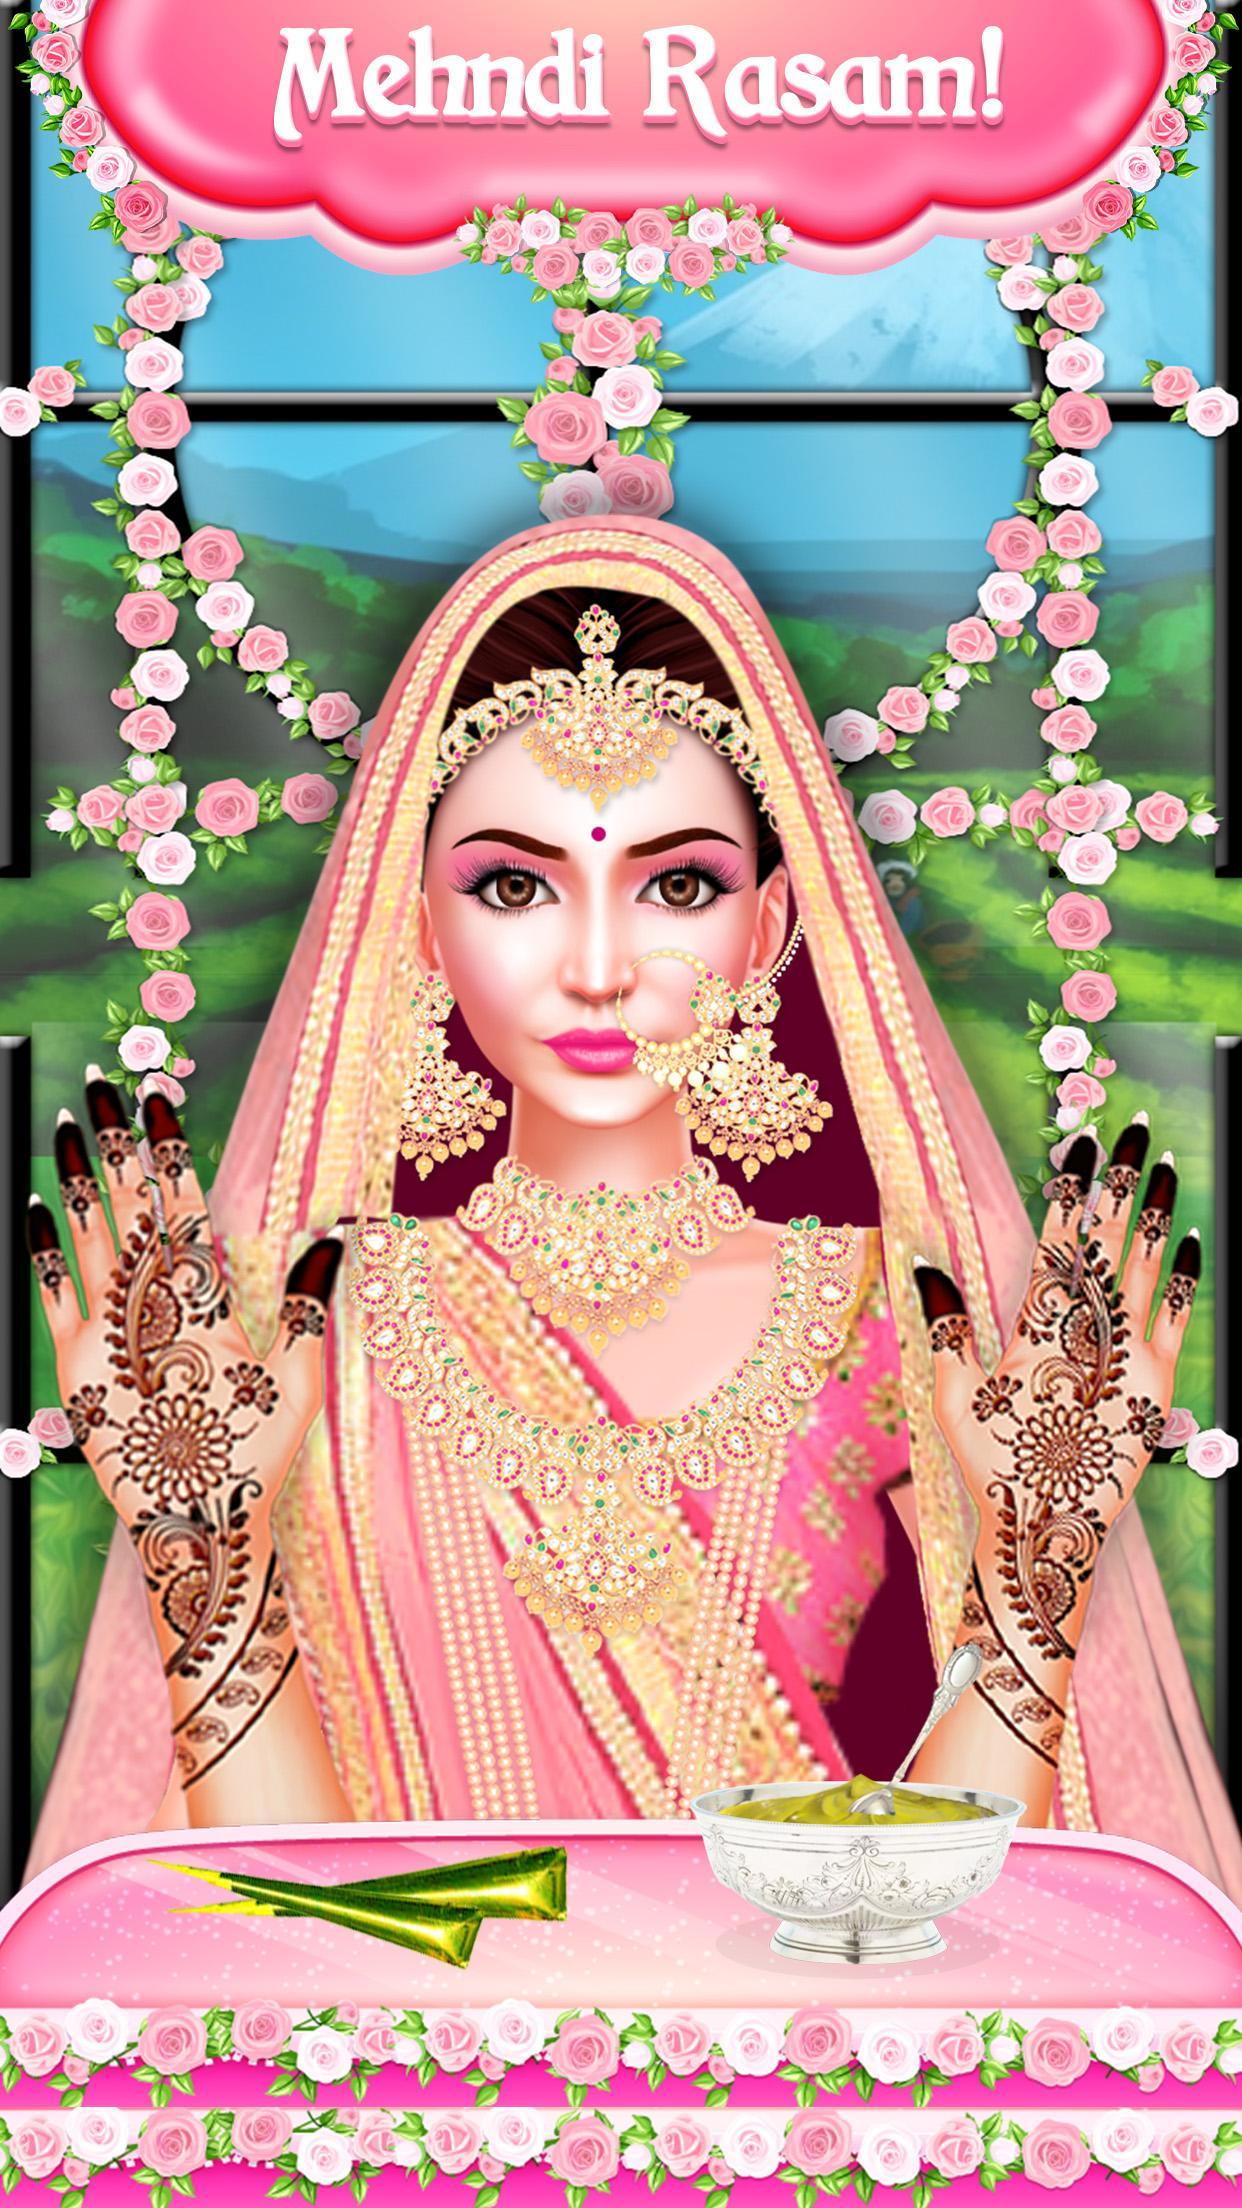 Android 用の インドの有名人の王室の結婚式の儀式 Apk をダウンロード